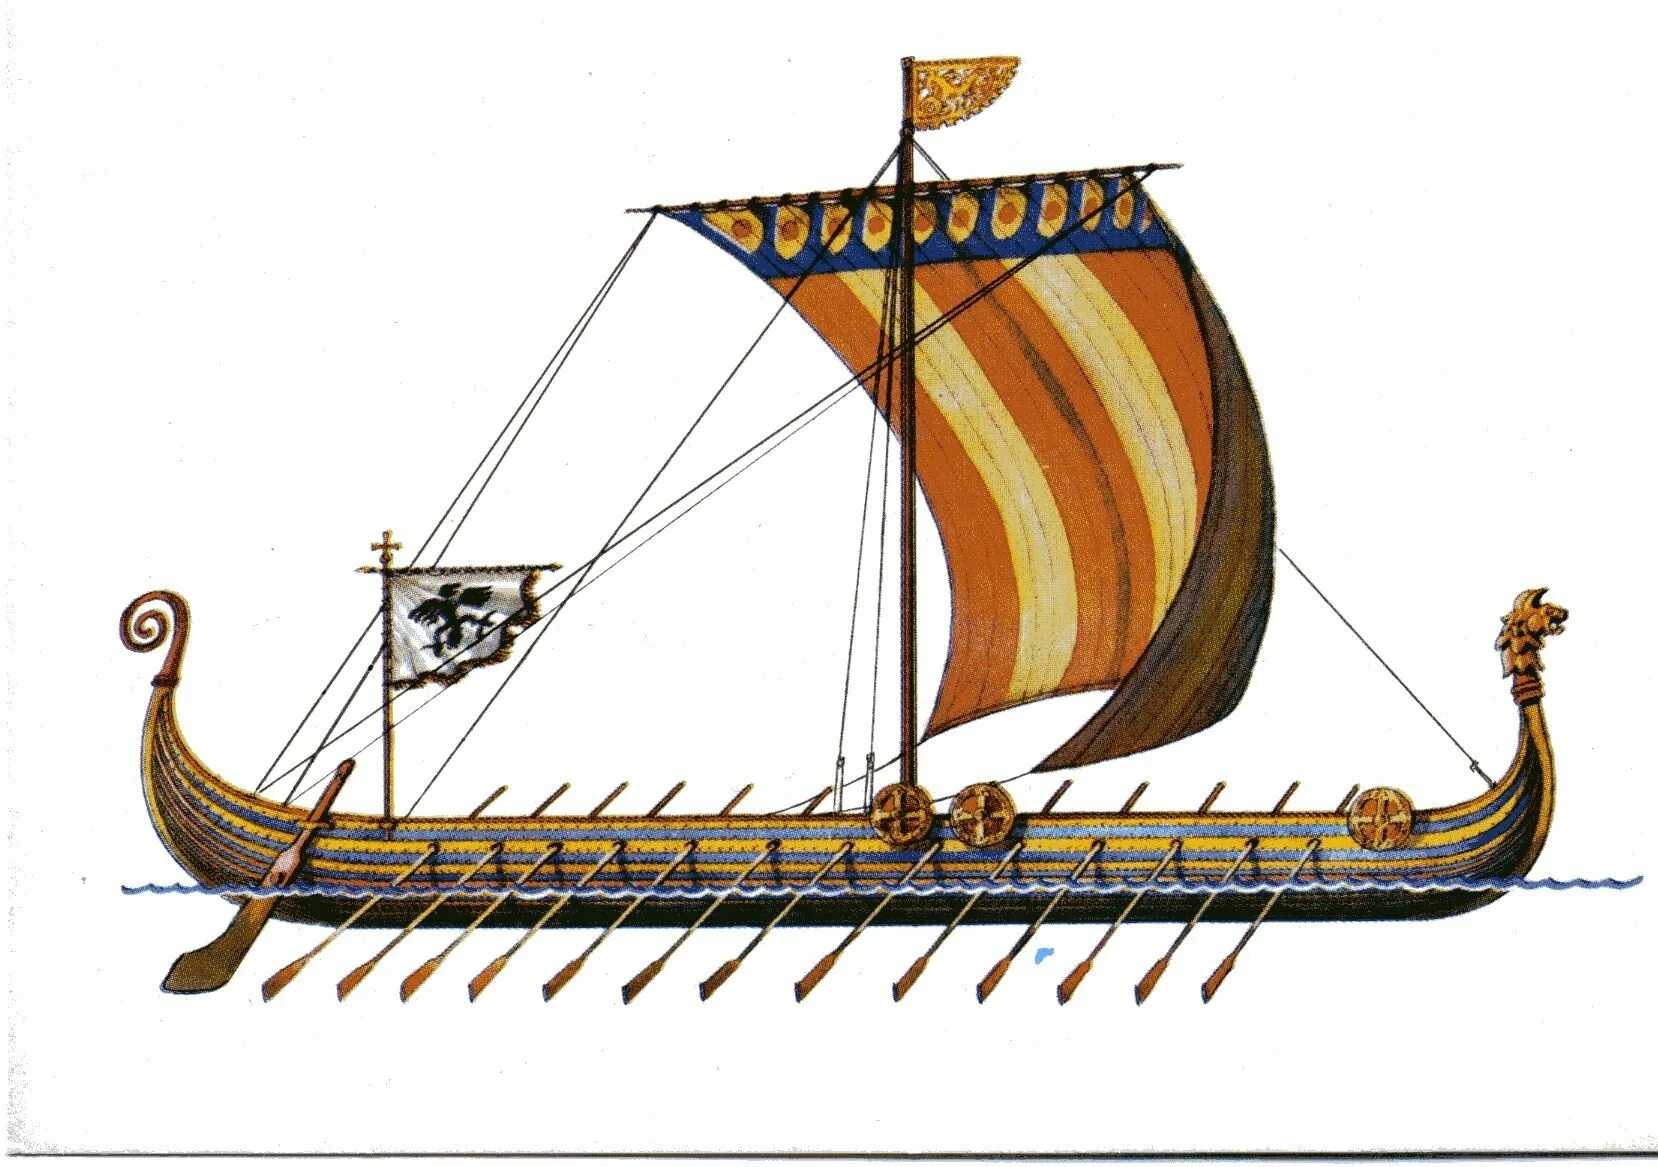 Корабль викингов Drakkar. Ладья викингов дракар. Корабль викингов Драккар 10 век. Корабли Вильгельма завоевателя. Ладья разбор